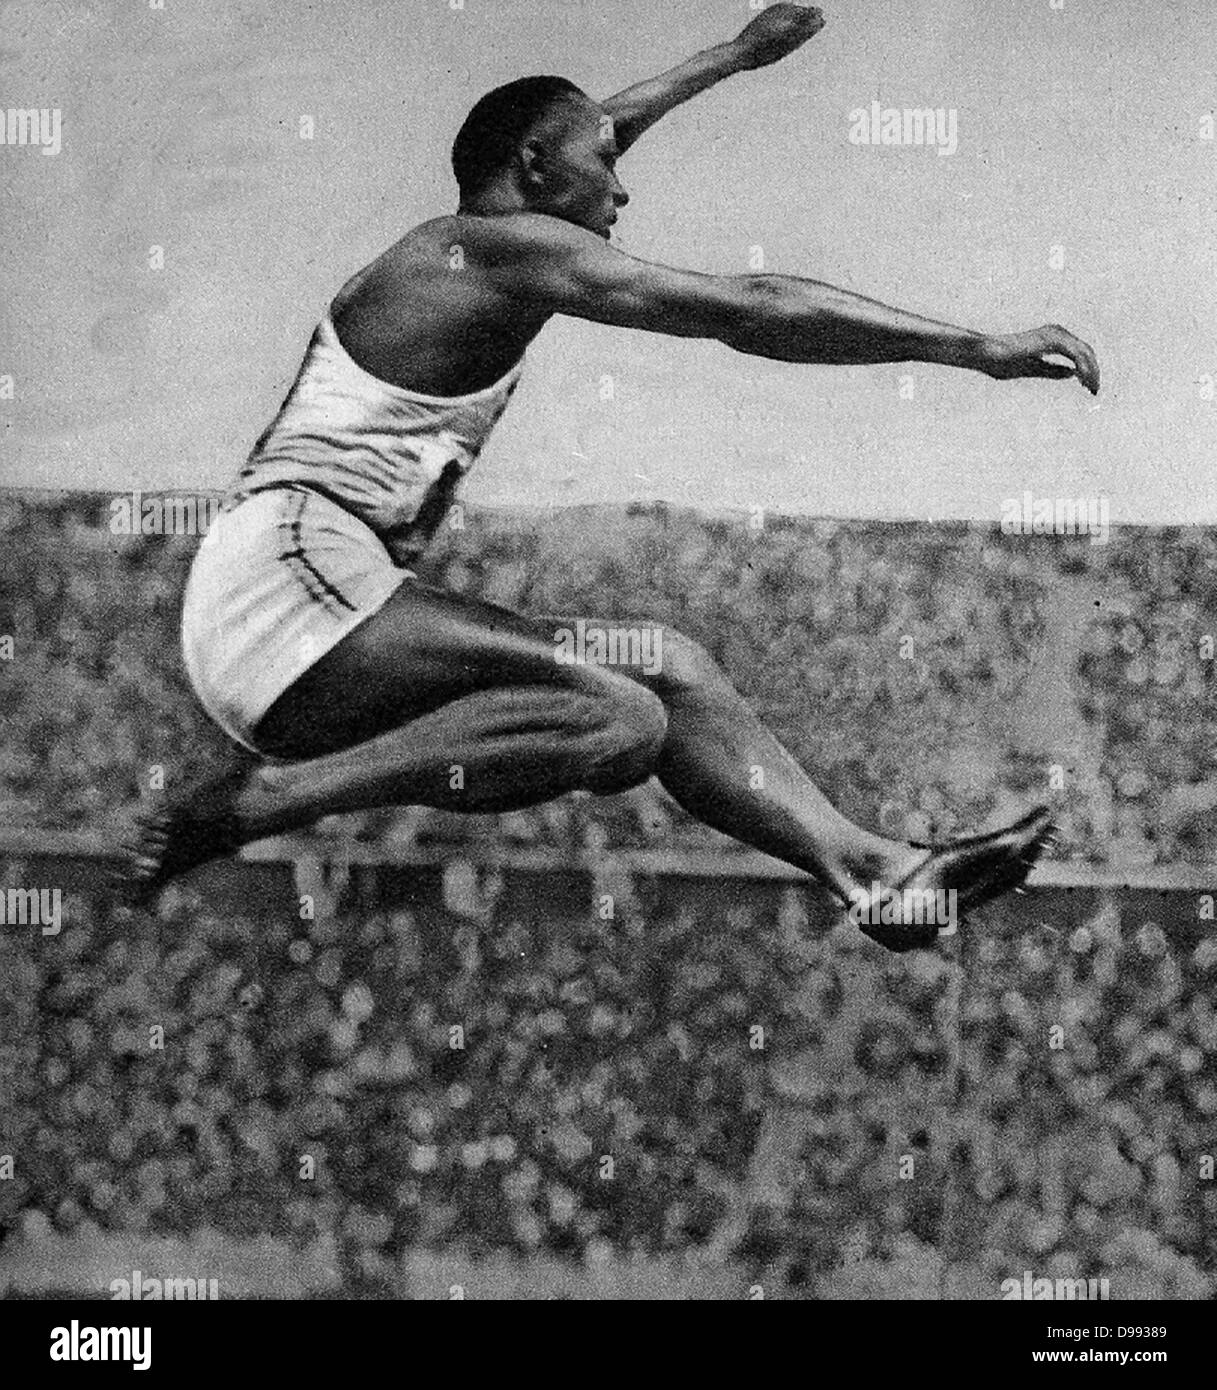 Jesse Owens (1913 - 1980) pista americana e campo sportivo. Ha partecipato nel 1936 Olimpiadi di estate a Berlino, in Germania, dove ha raggiunto fama internazionale vincendo quattro medaglie d oro: uno ciascuno in 100 metri, a 200 metri, il salto in lungo e come Foto Stock